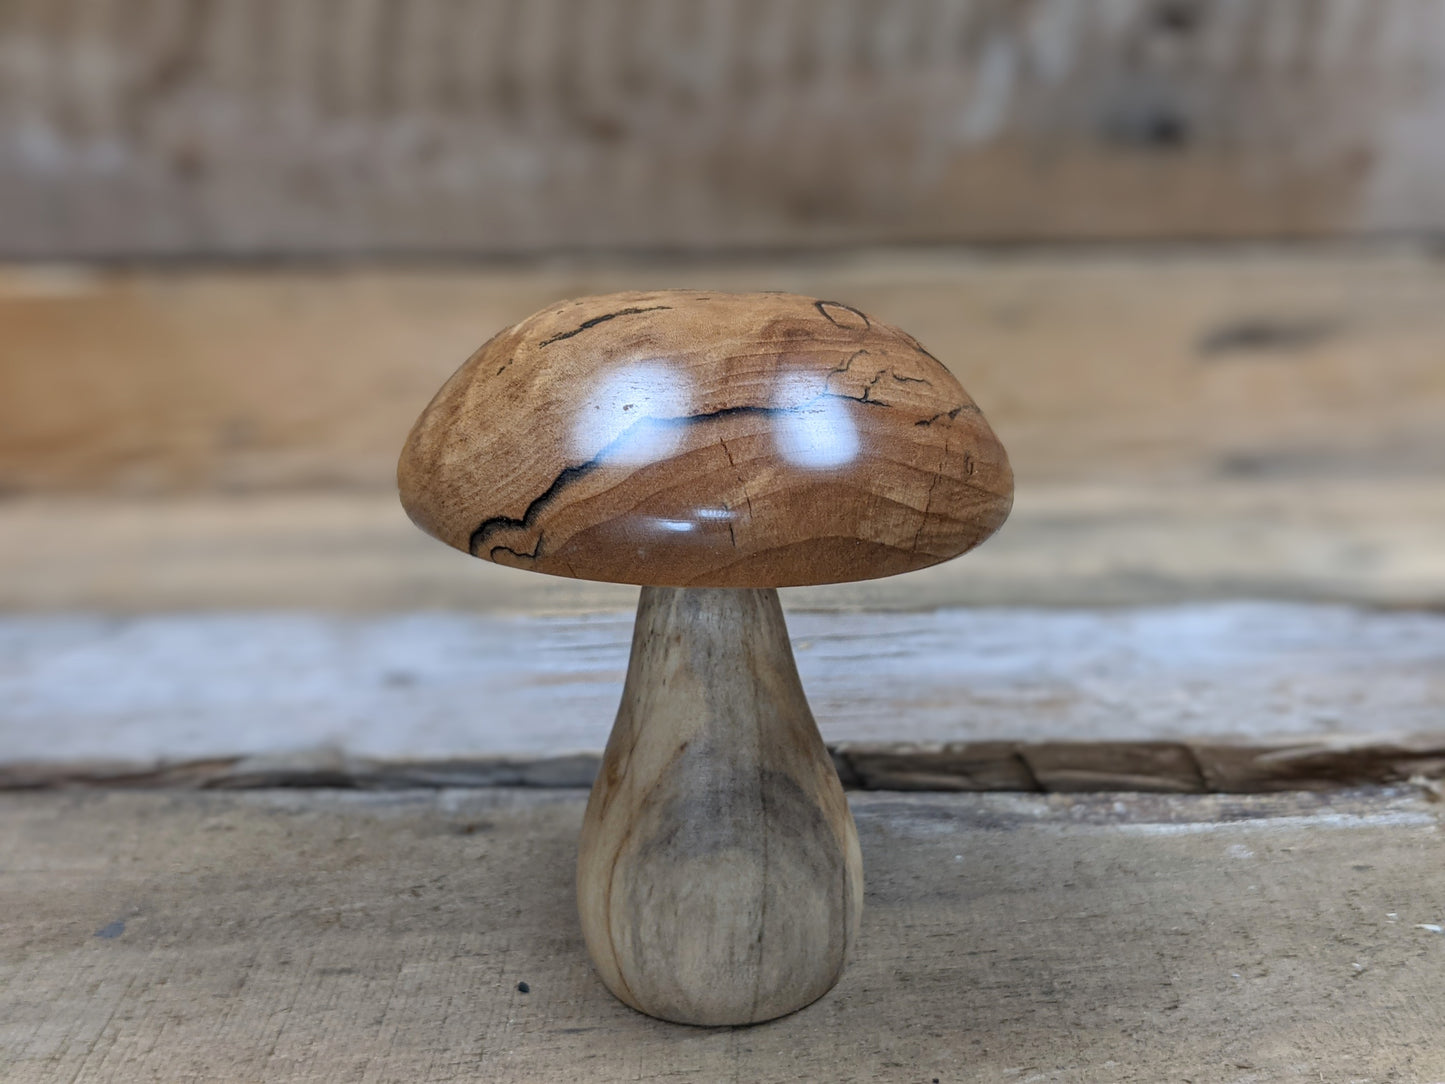 Figured, spalted maple and cottonwood mushroom